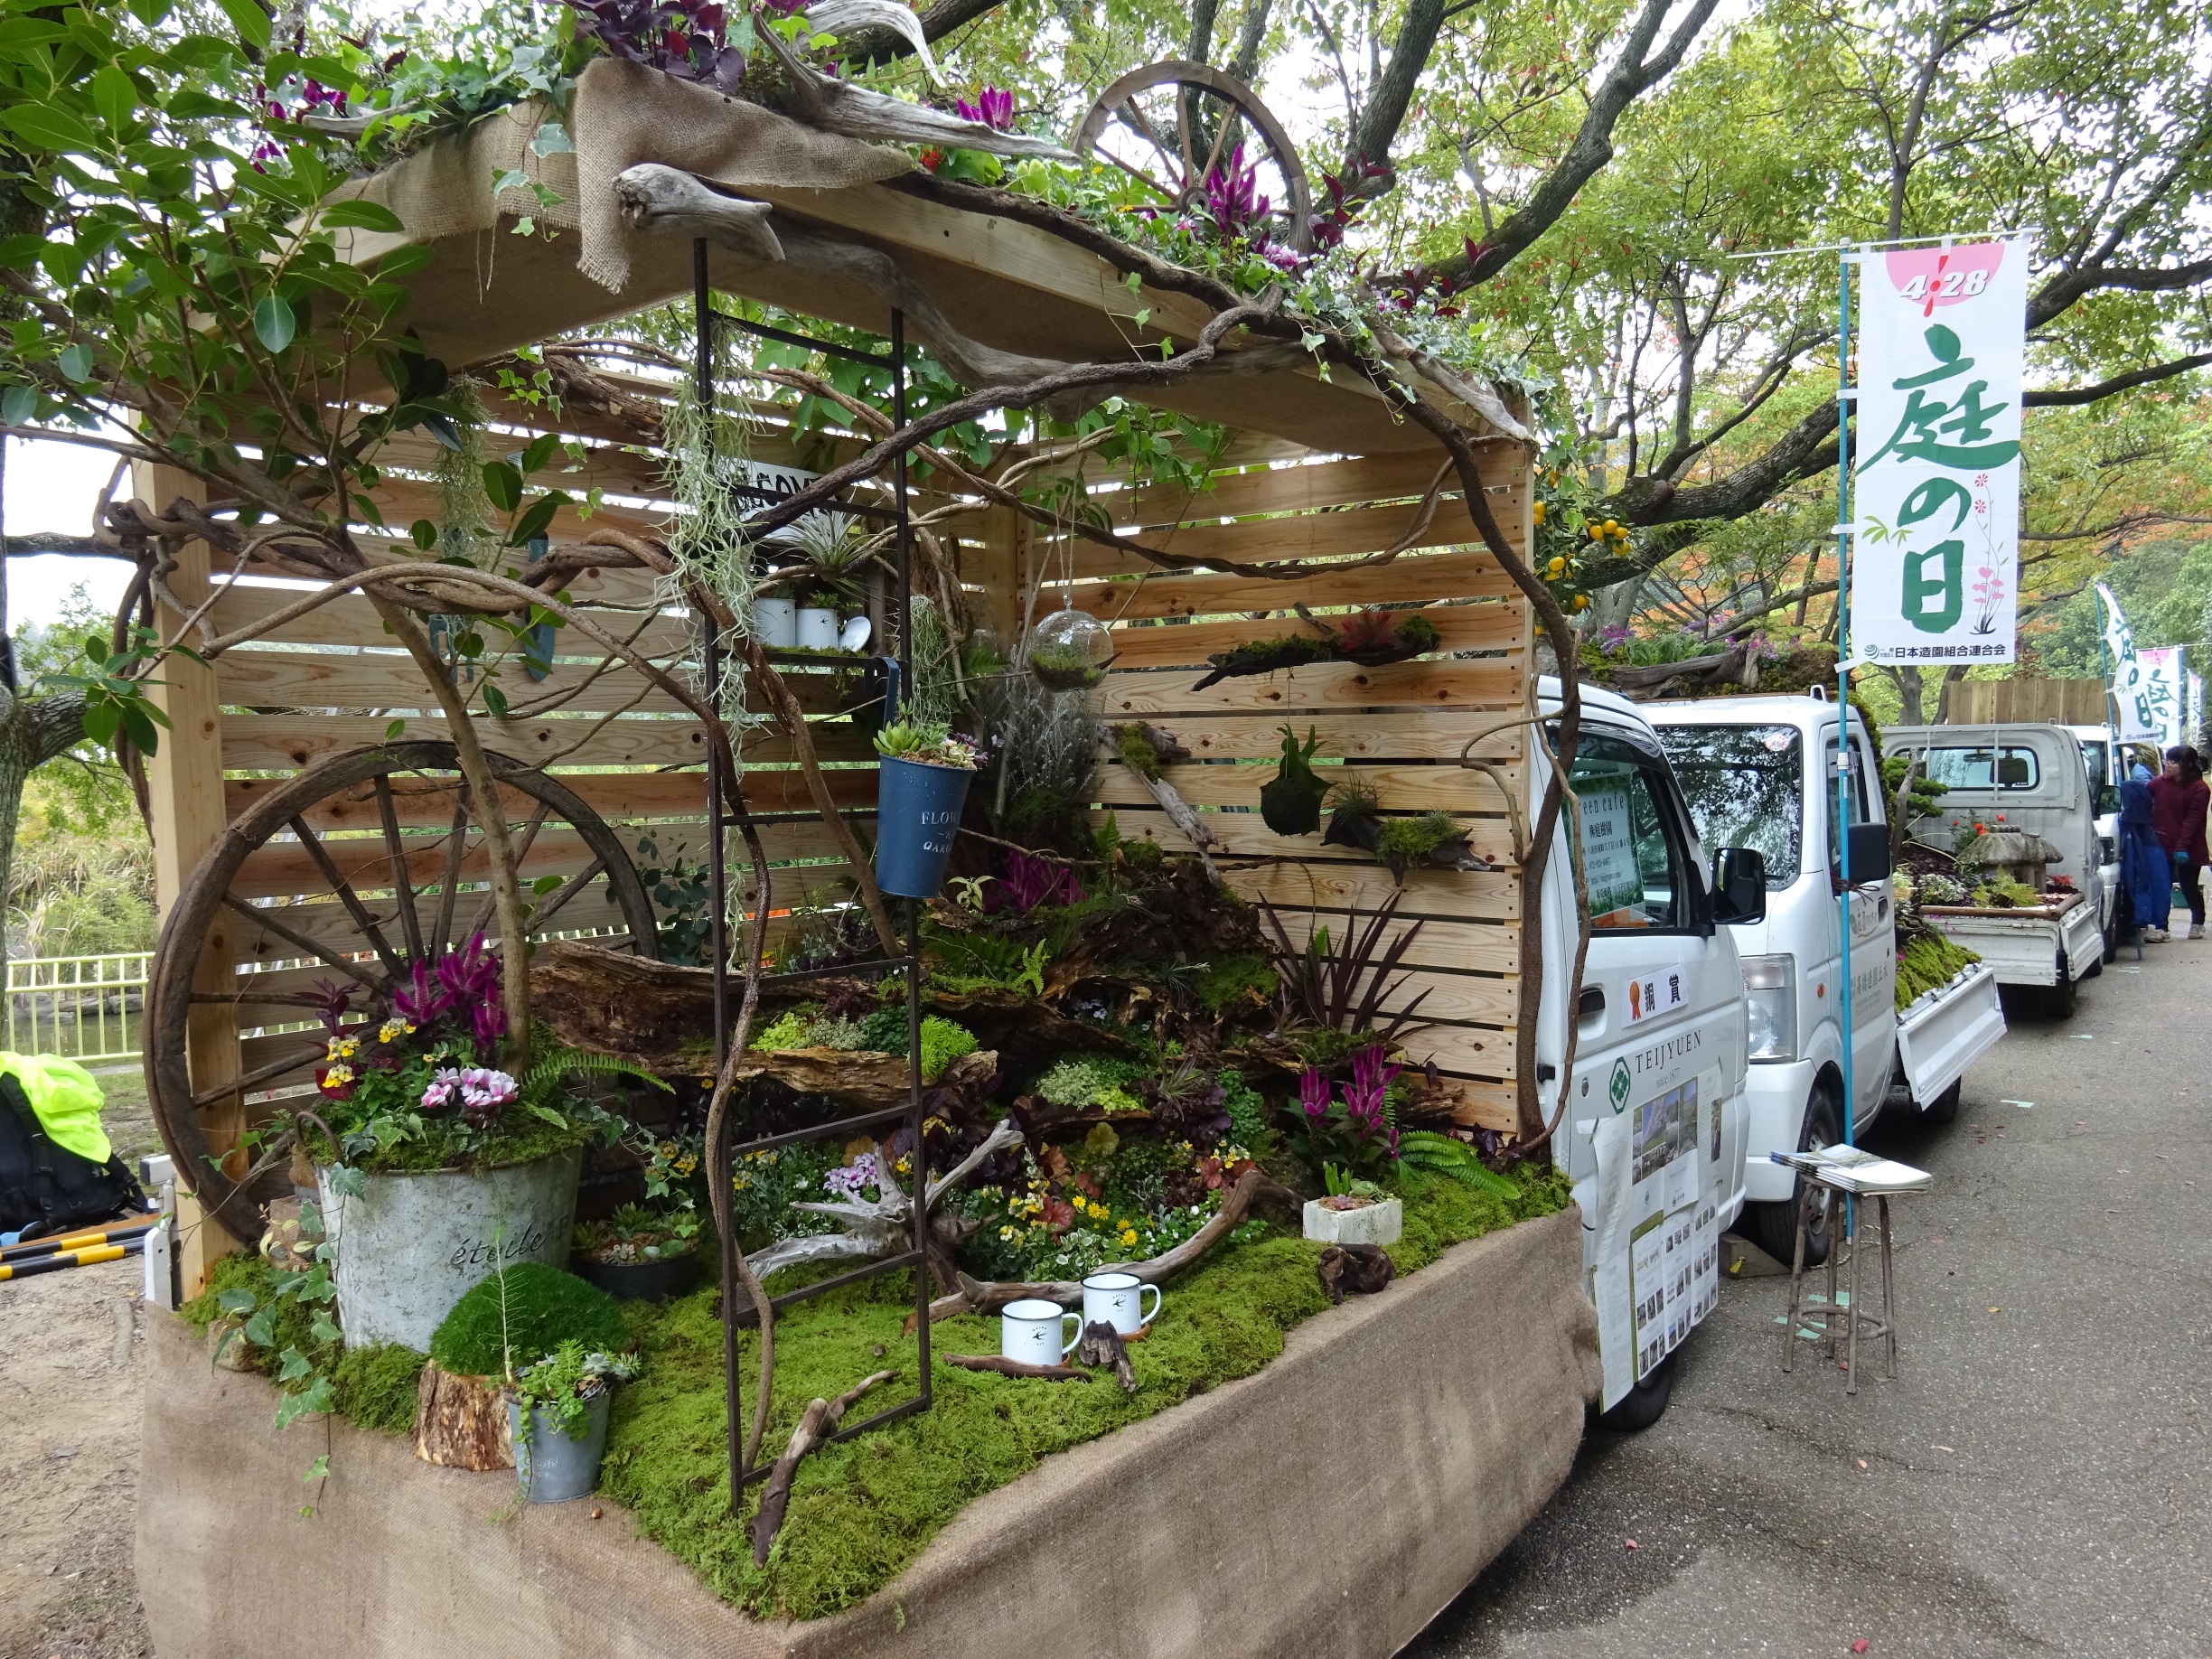 Kei Truck Garden Contest un étrange concours de botanique japonais